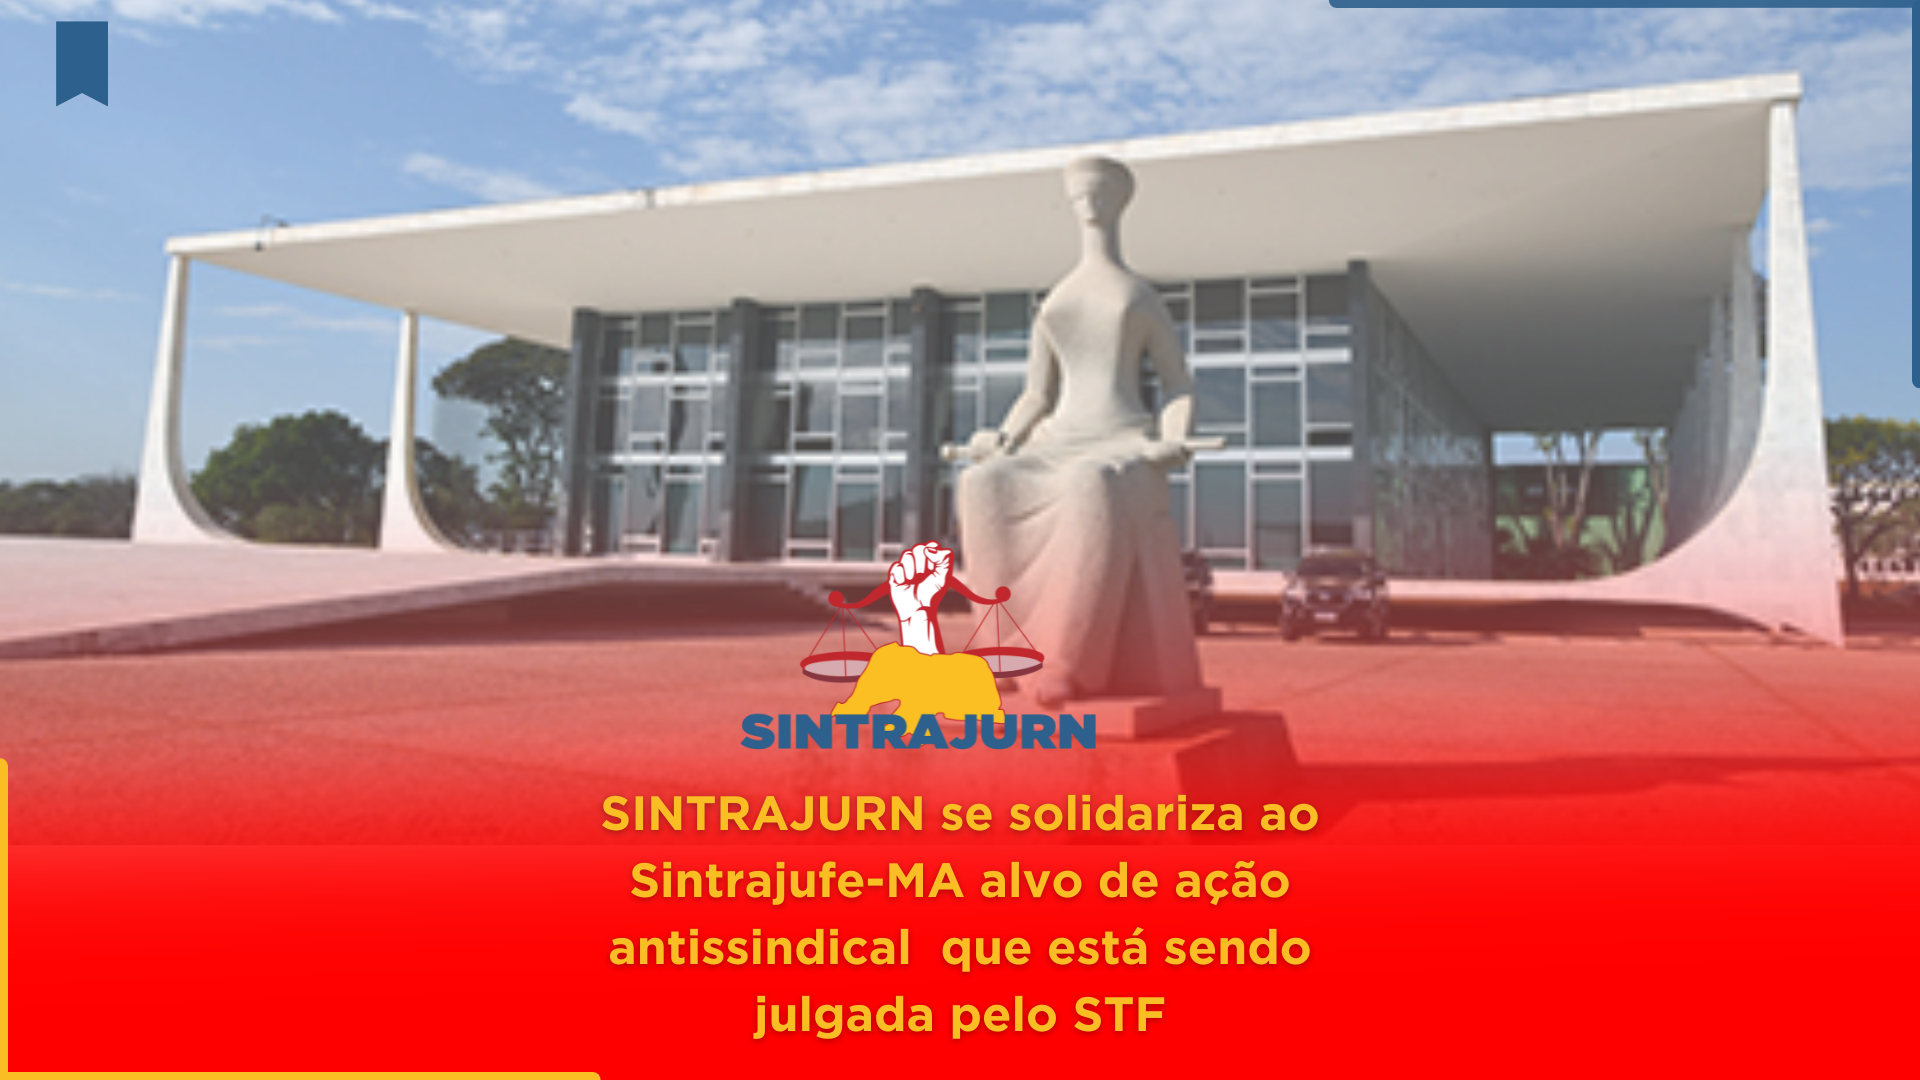 SINTRAJURN se solidariza ao Sintrajufe-MA alvo de ação antissindical que está sendo julgada pelo STF